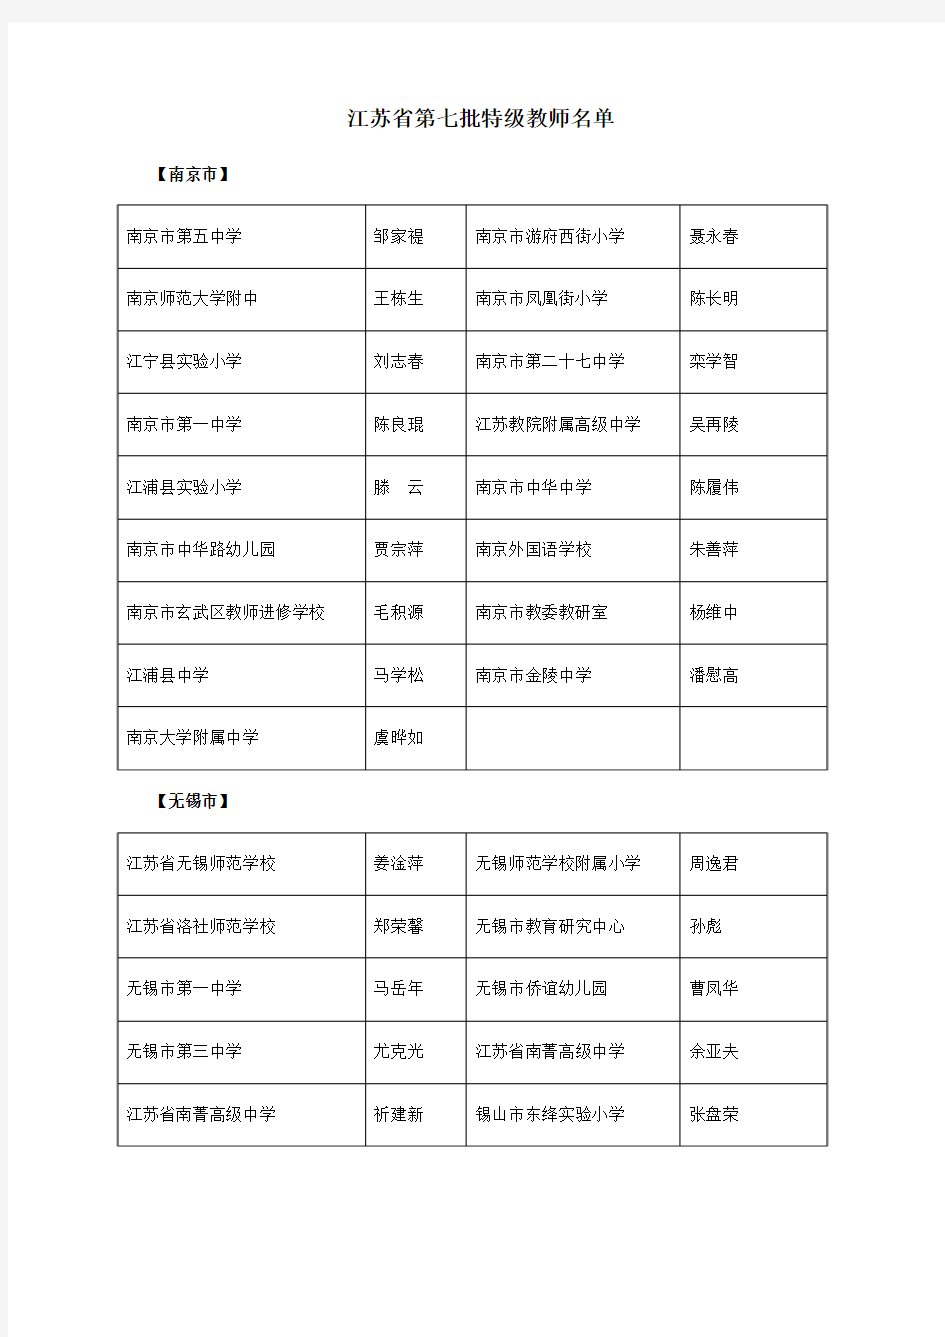 江苏省第7批特级教师名单(2000)